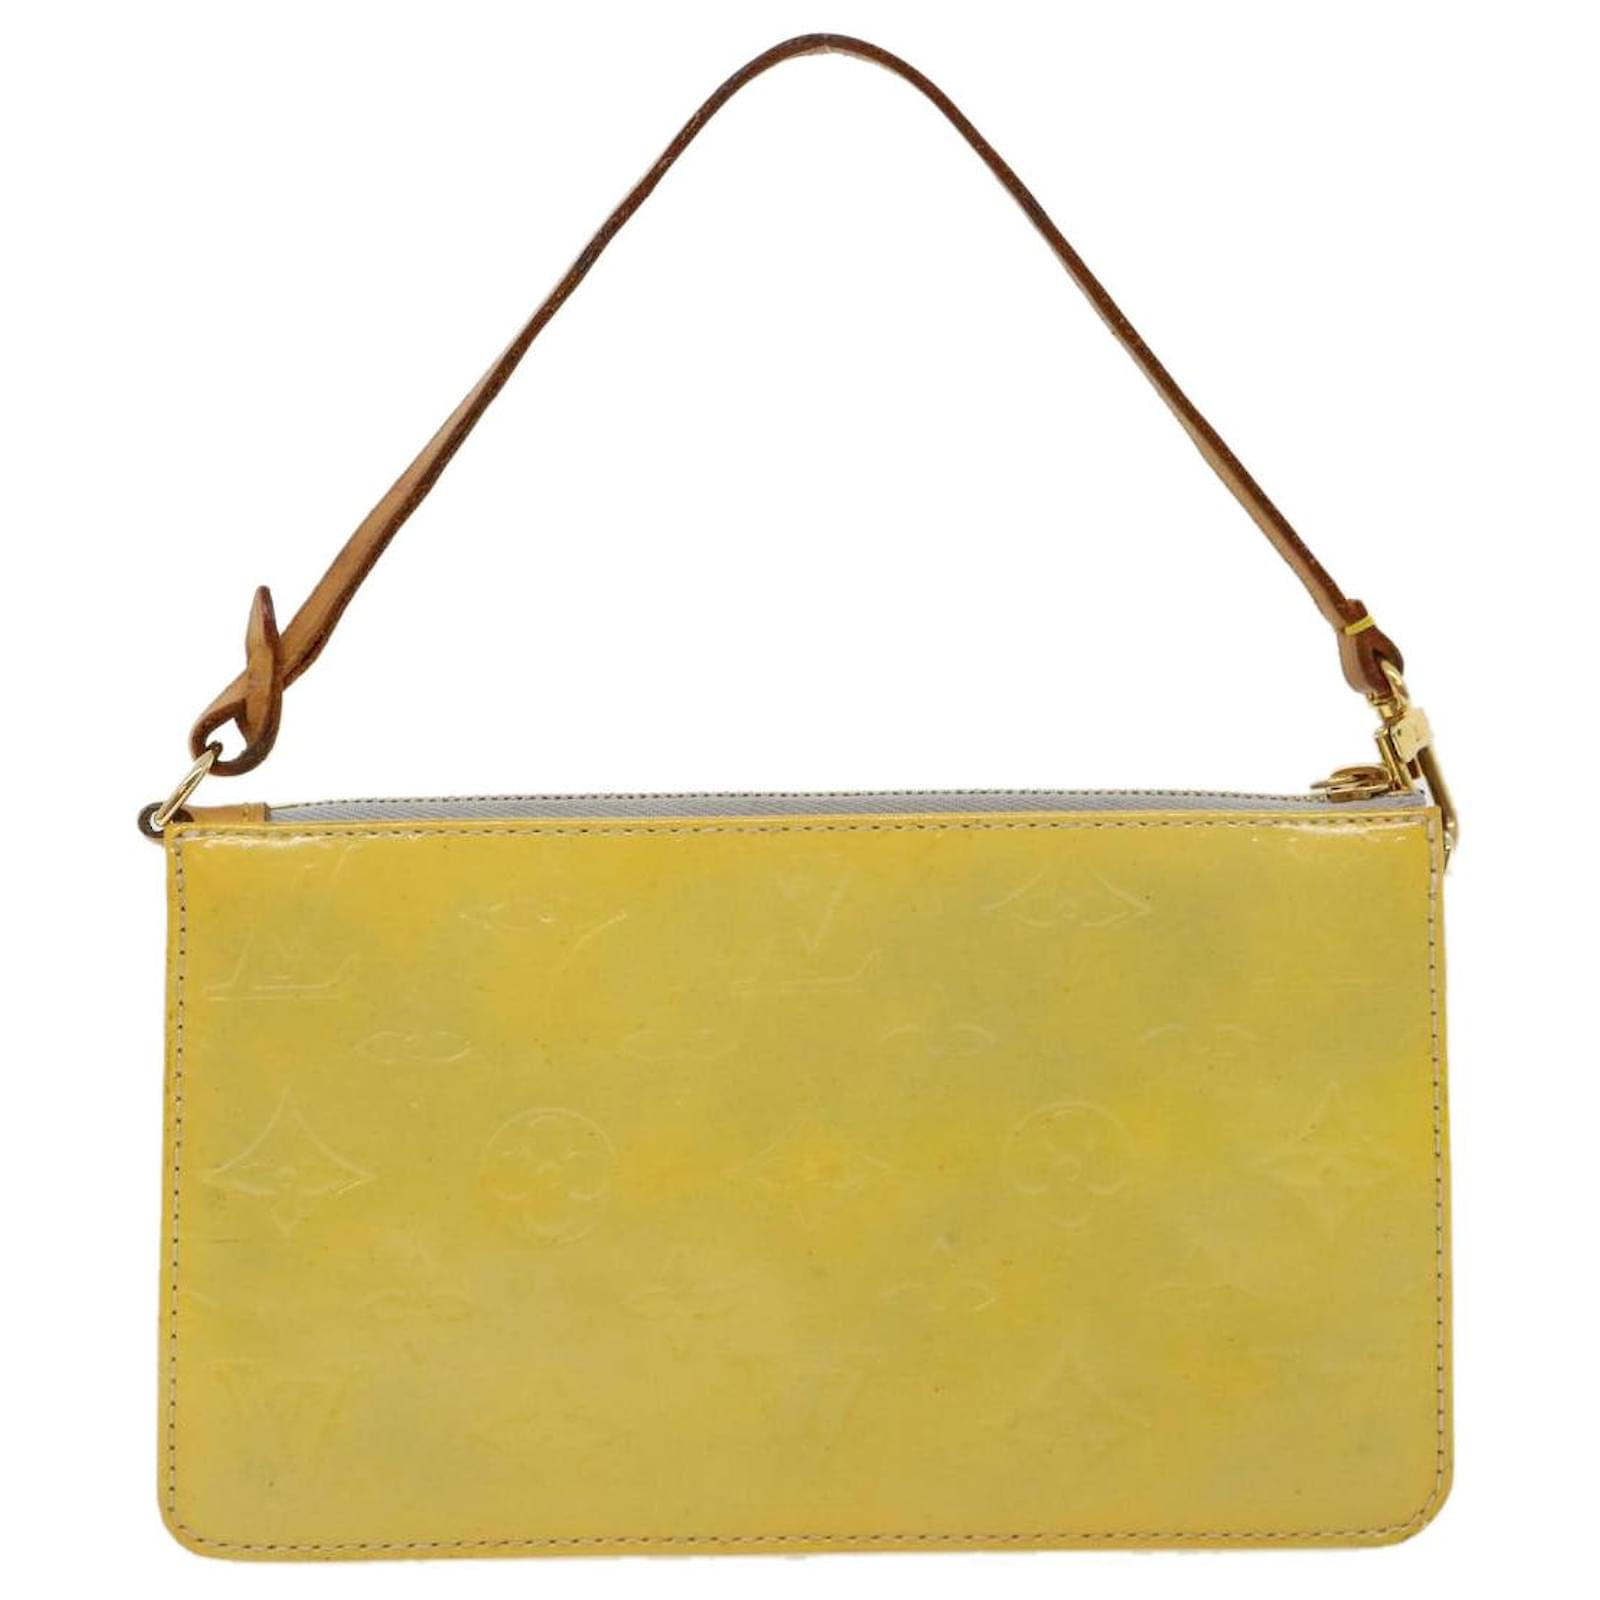 Lexington Shoulder bag in Monogram Vernis leather, Gold Hardware